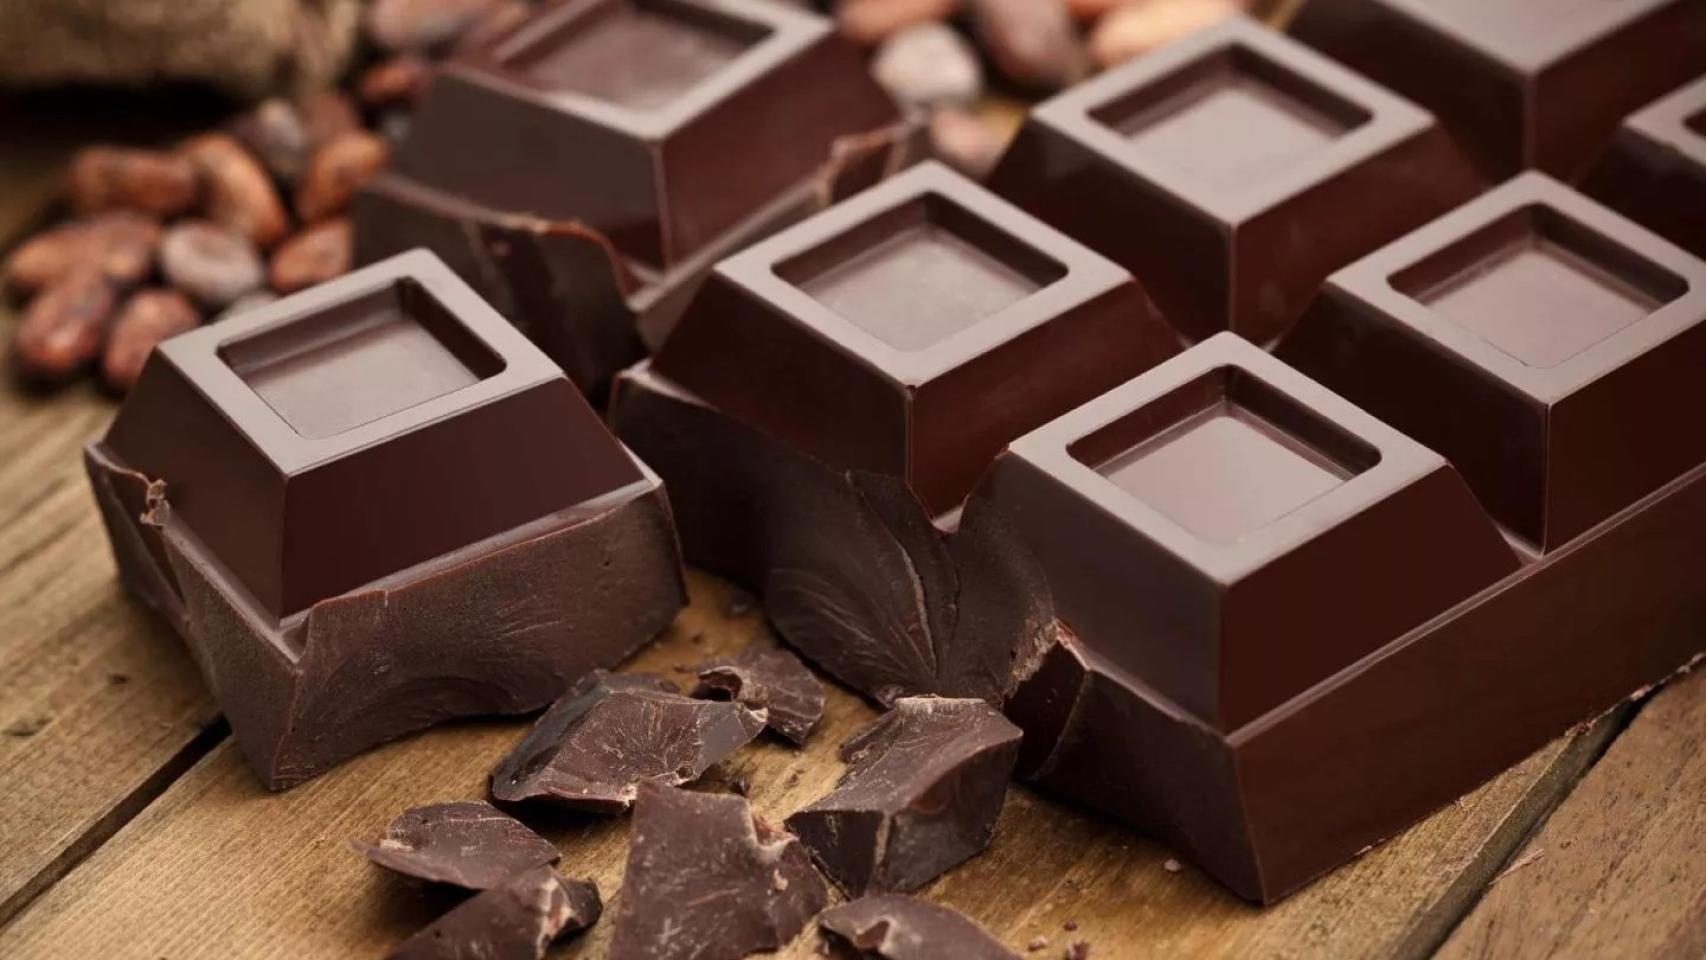 Imagen de archivo de una tableta de chocolate.